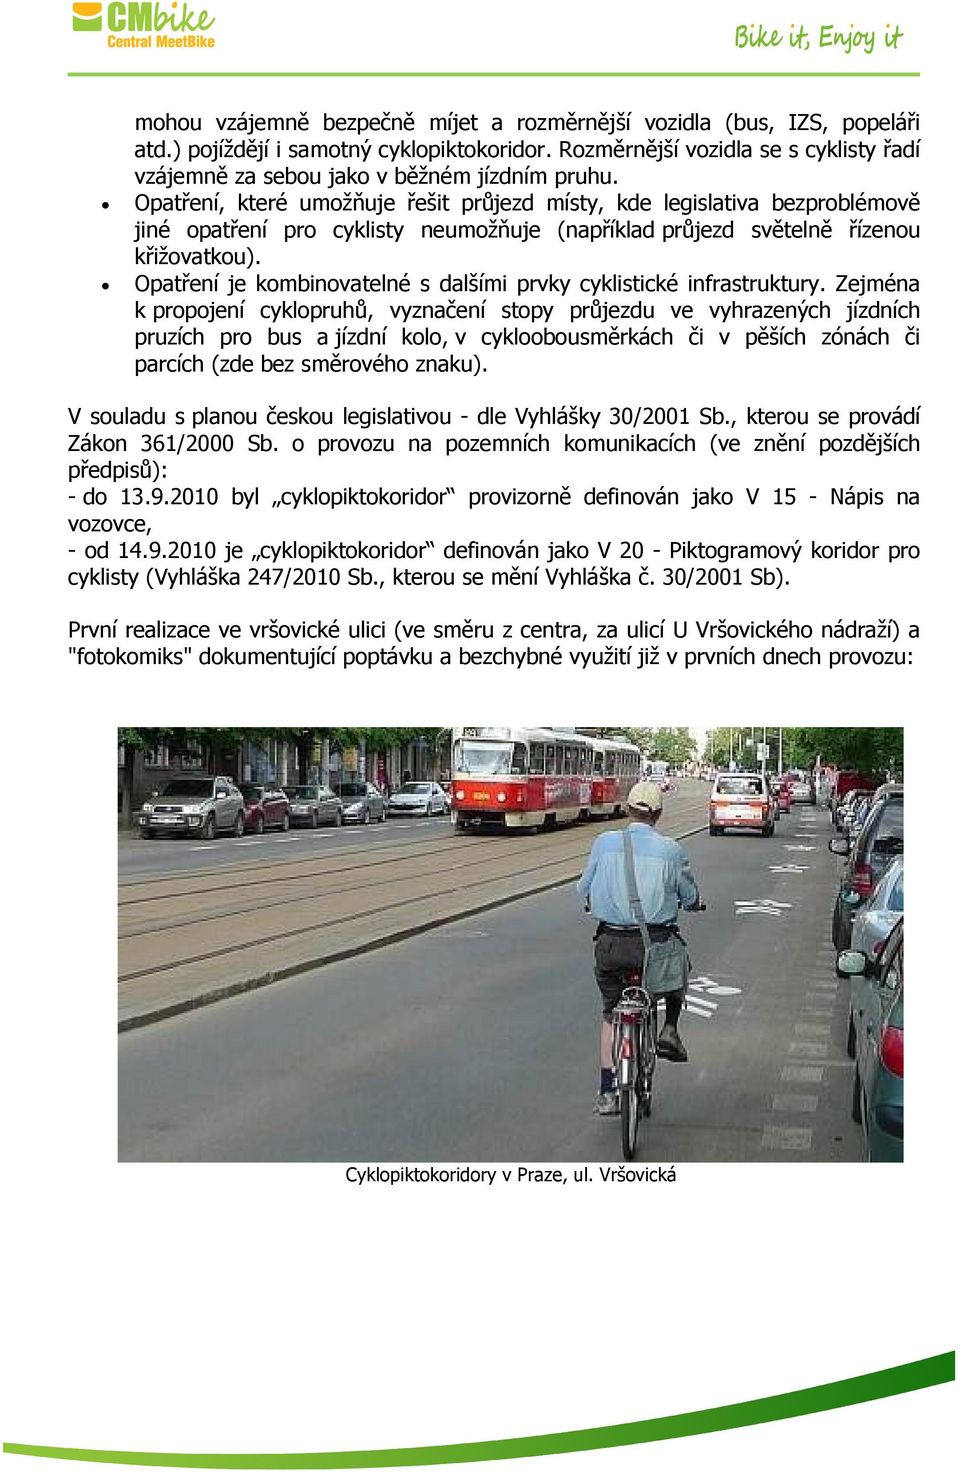 Opatření, které umožňuje řešit průjezd místy, kde legislativa bezproblémově jiné opatření pro cyklisty neumožňuje (například průjezd světelně řízenou křižovatkou).